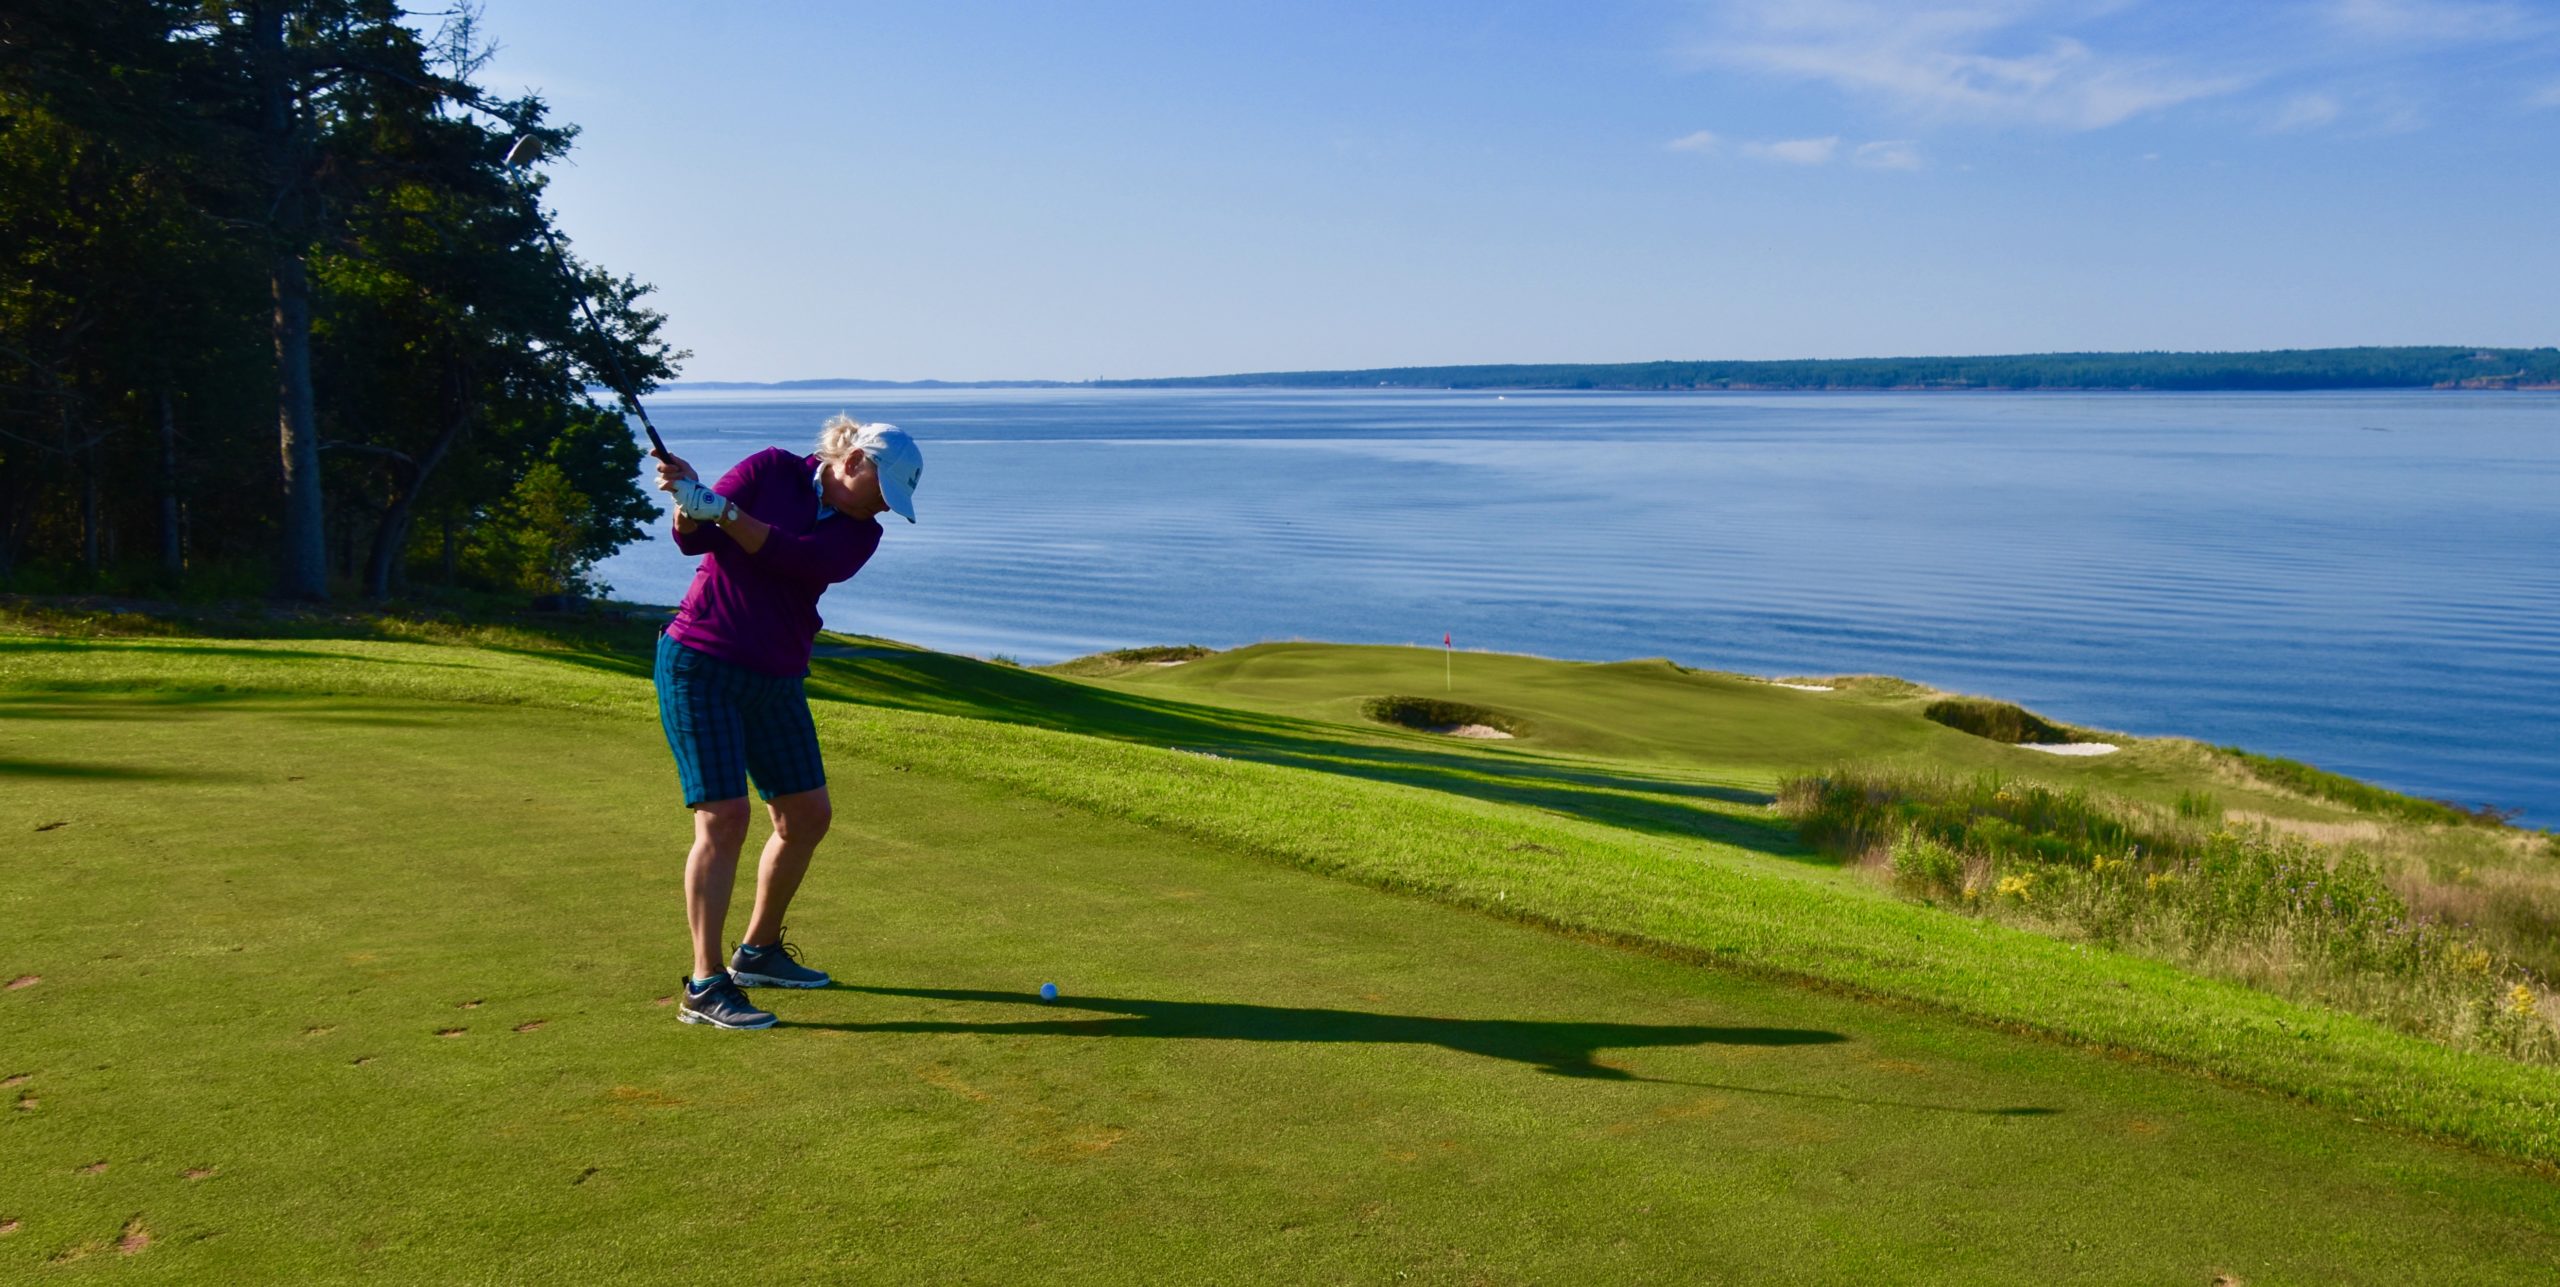 Alison on No. 12, Algonquin Golf Course